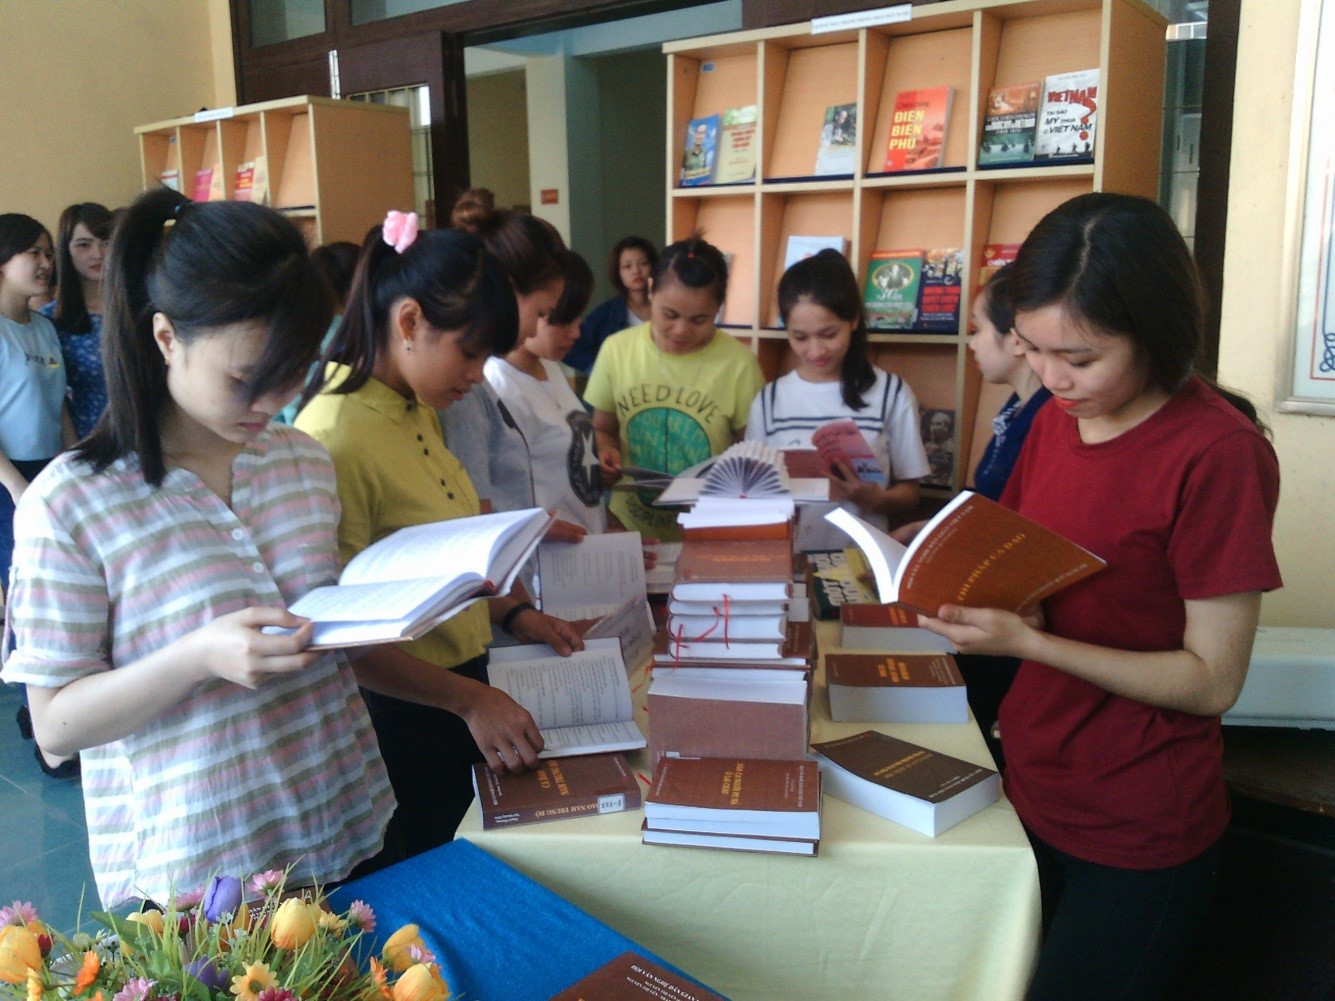 Trung tâm Hỗ trợ học tập - Thư viện: Trưng bày giới thiệu sách nhân kỷ niệm ngày sách Việt Nam 21/4